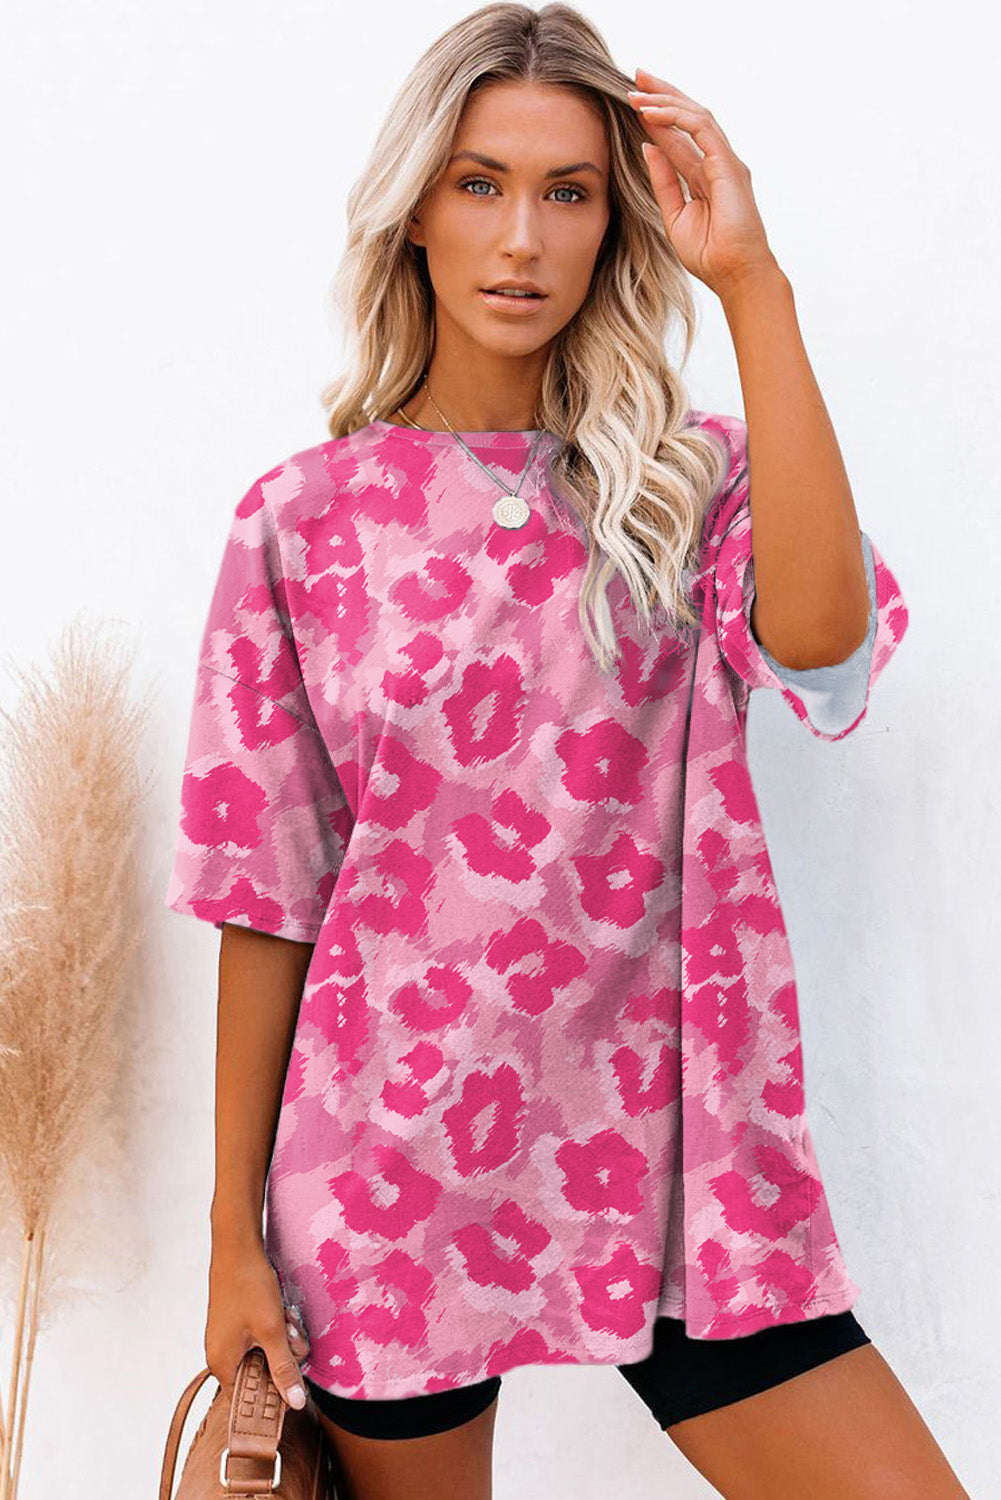 T-shirt oversize a mezza manica con stampa leopardata rosa